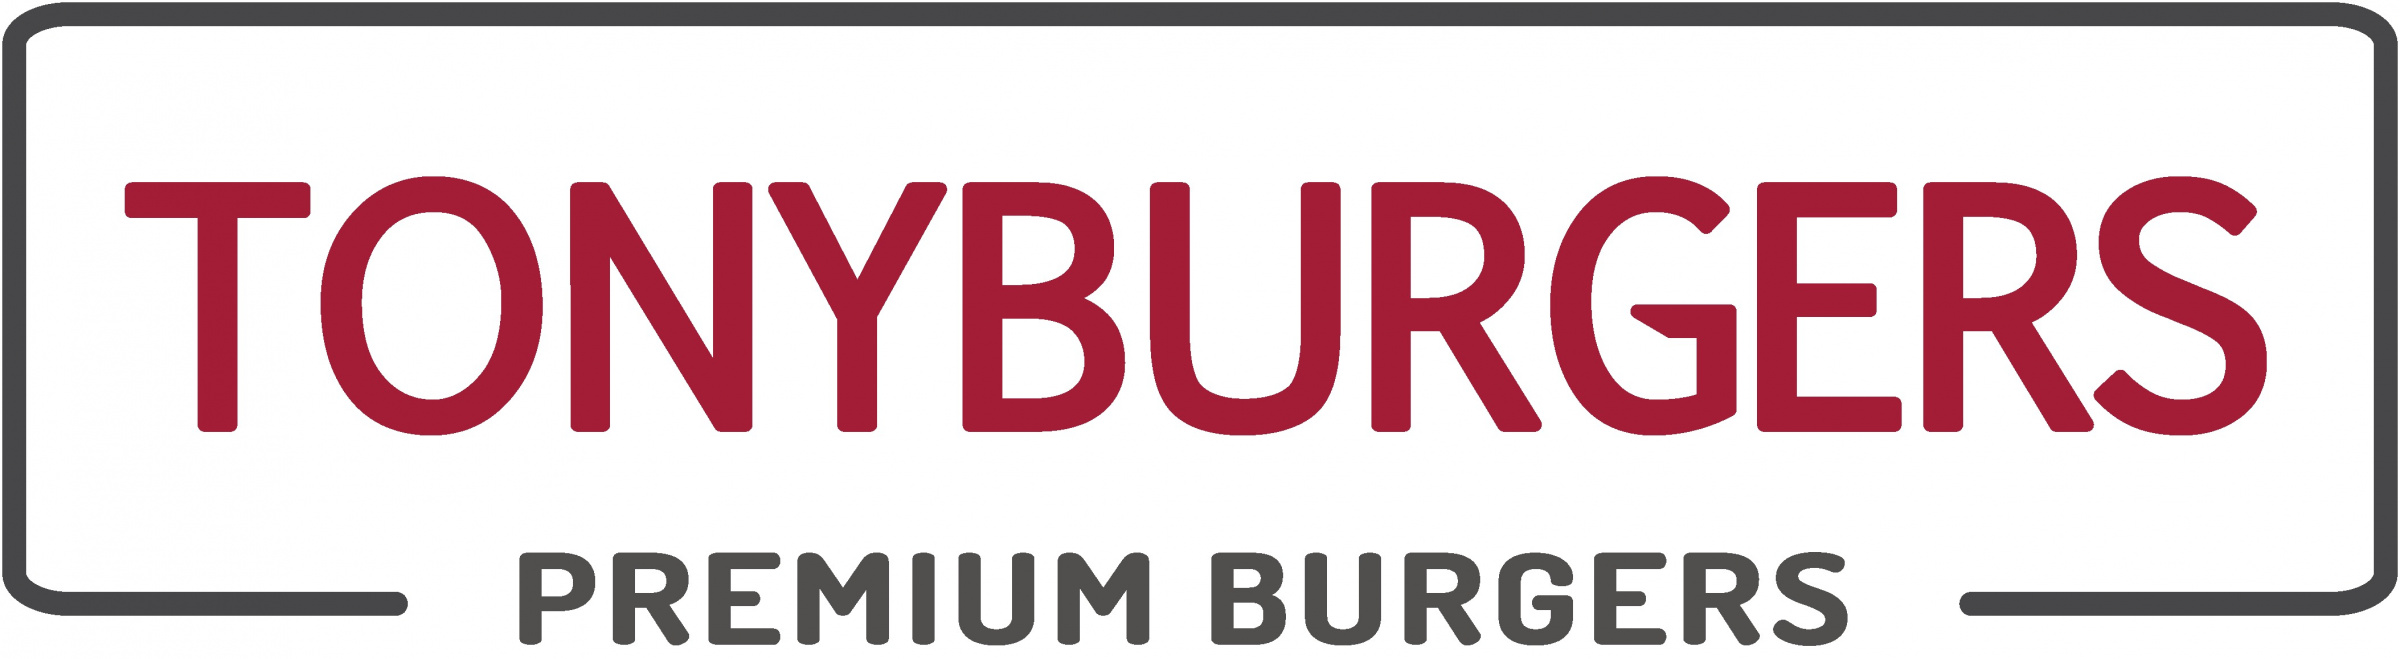 Tonyburgers logo